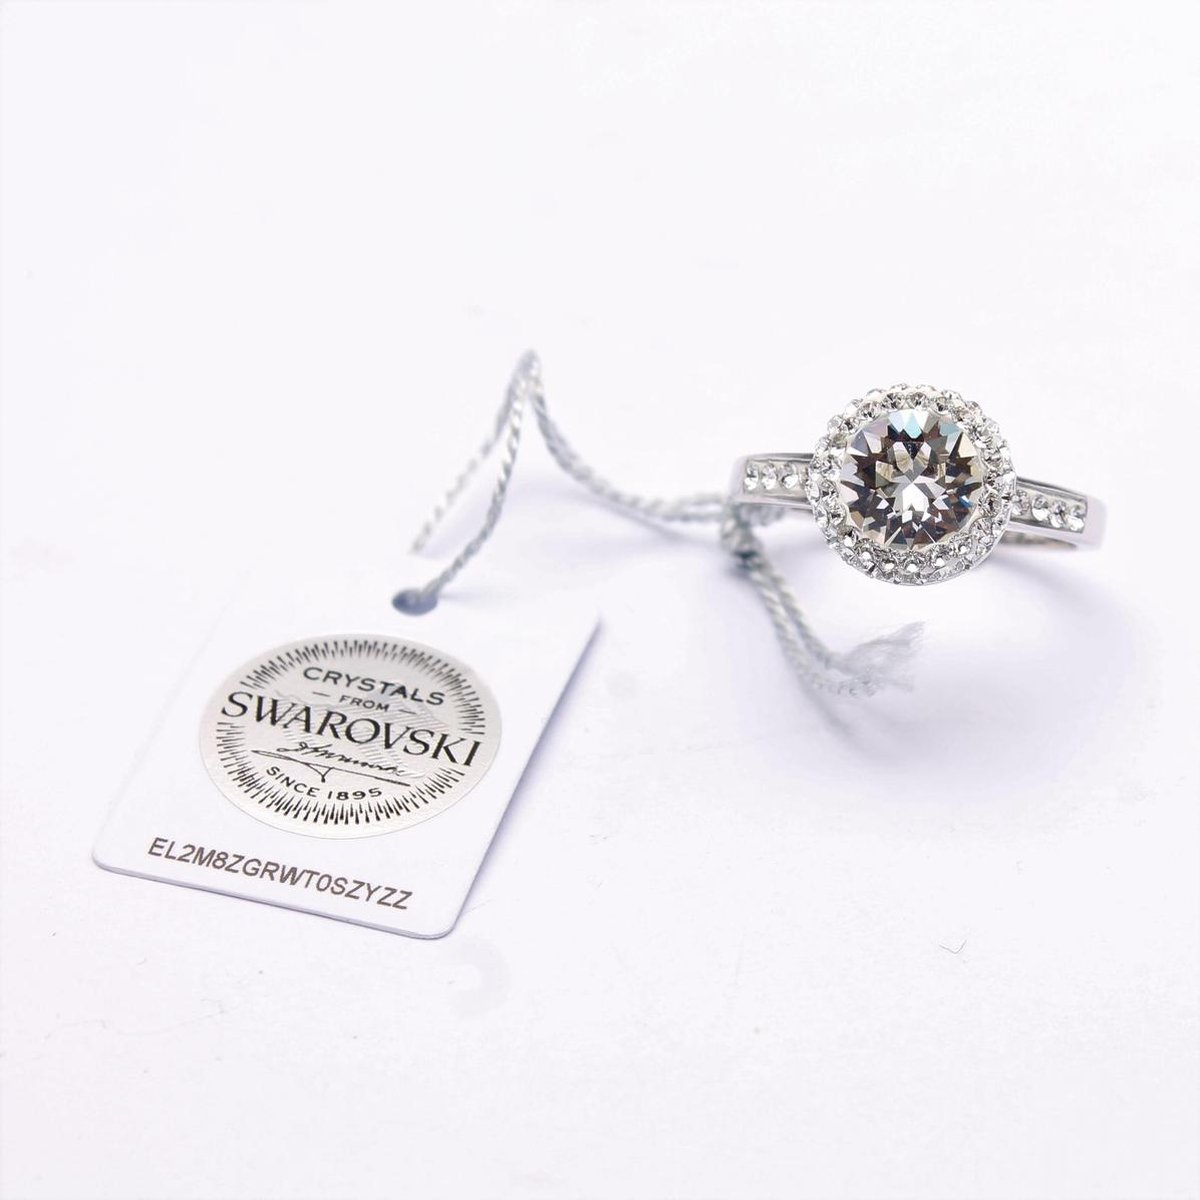 Valentijnsactie! Ring met Swarovski steen - ronde steen - 925 sterling zilver - voorzien van Swarovski certificaat - ringmaat 19,5